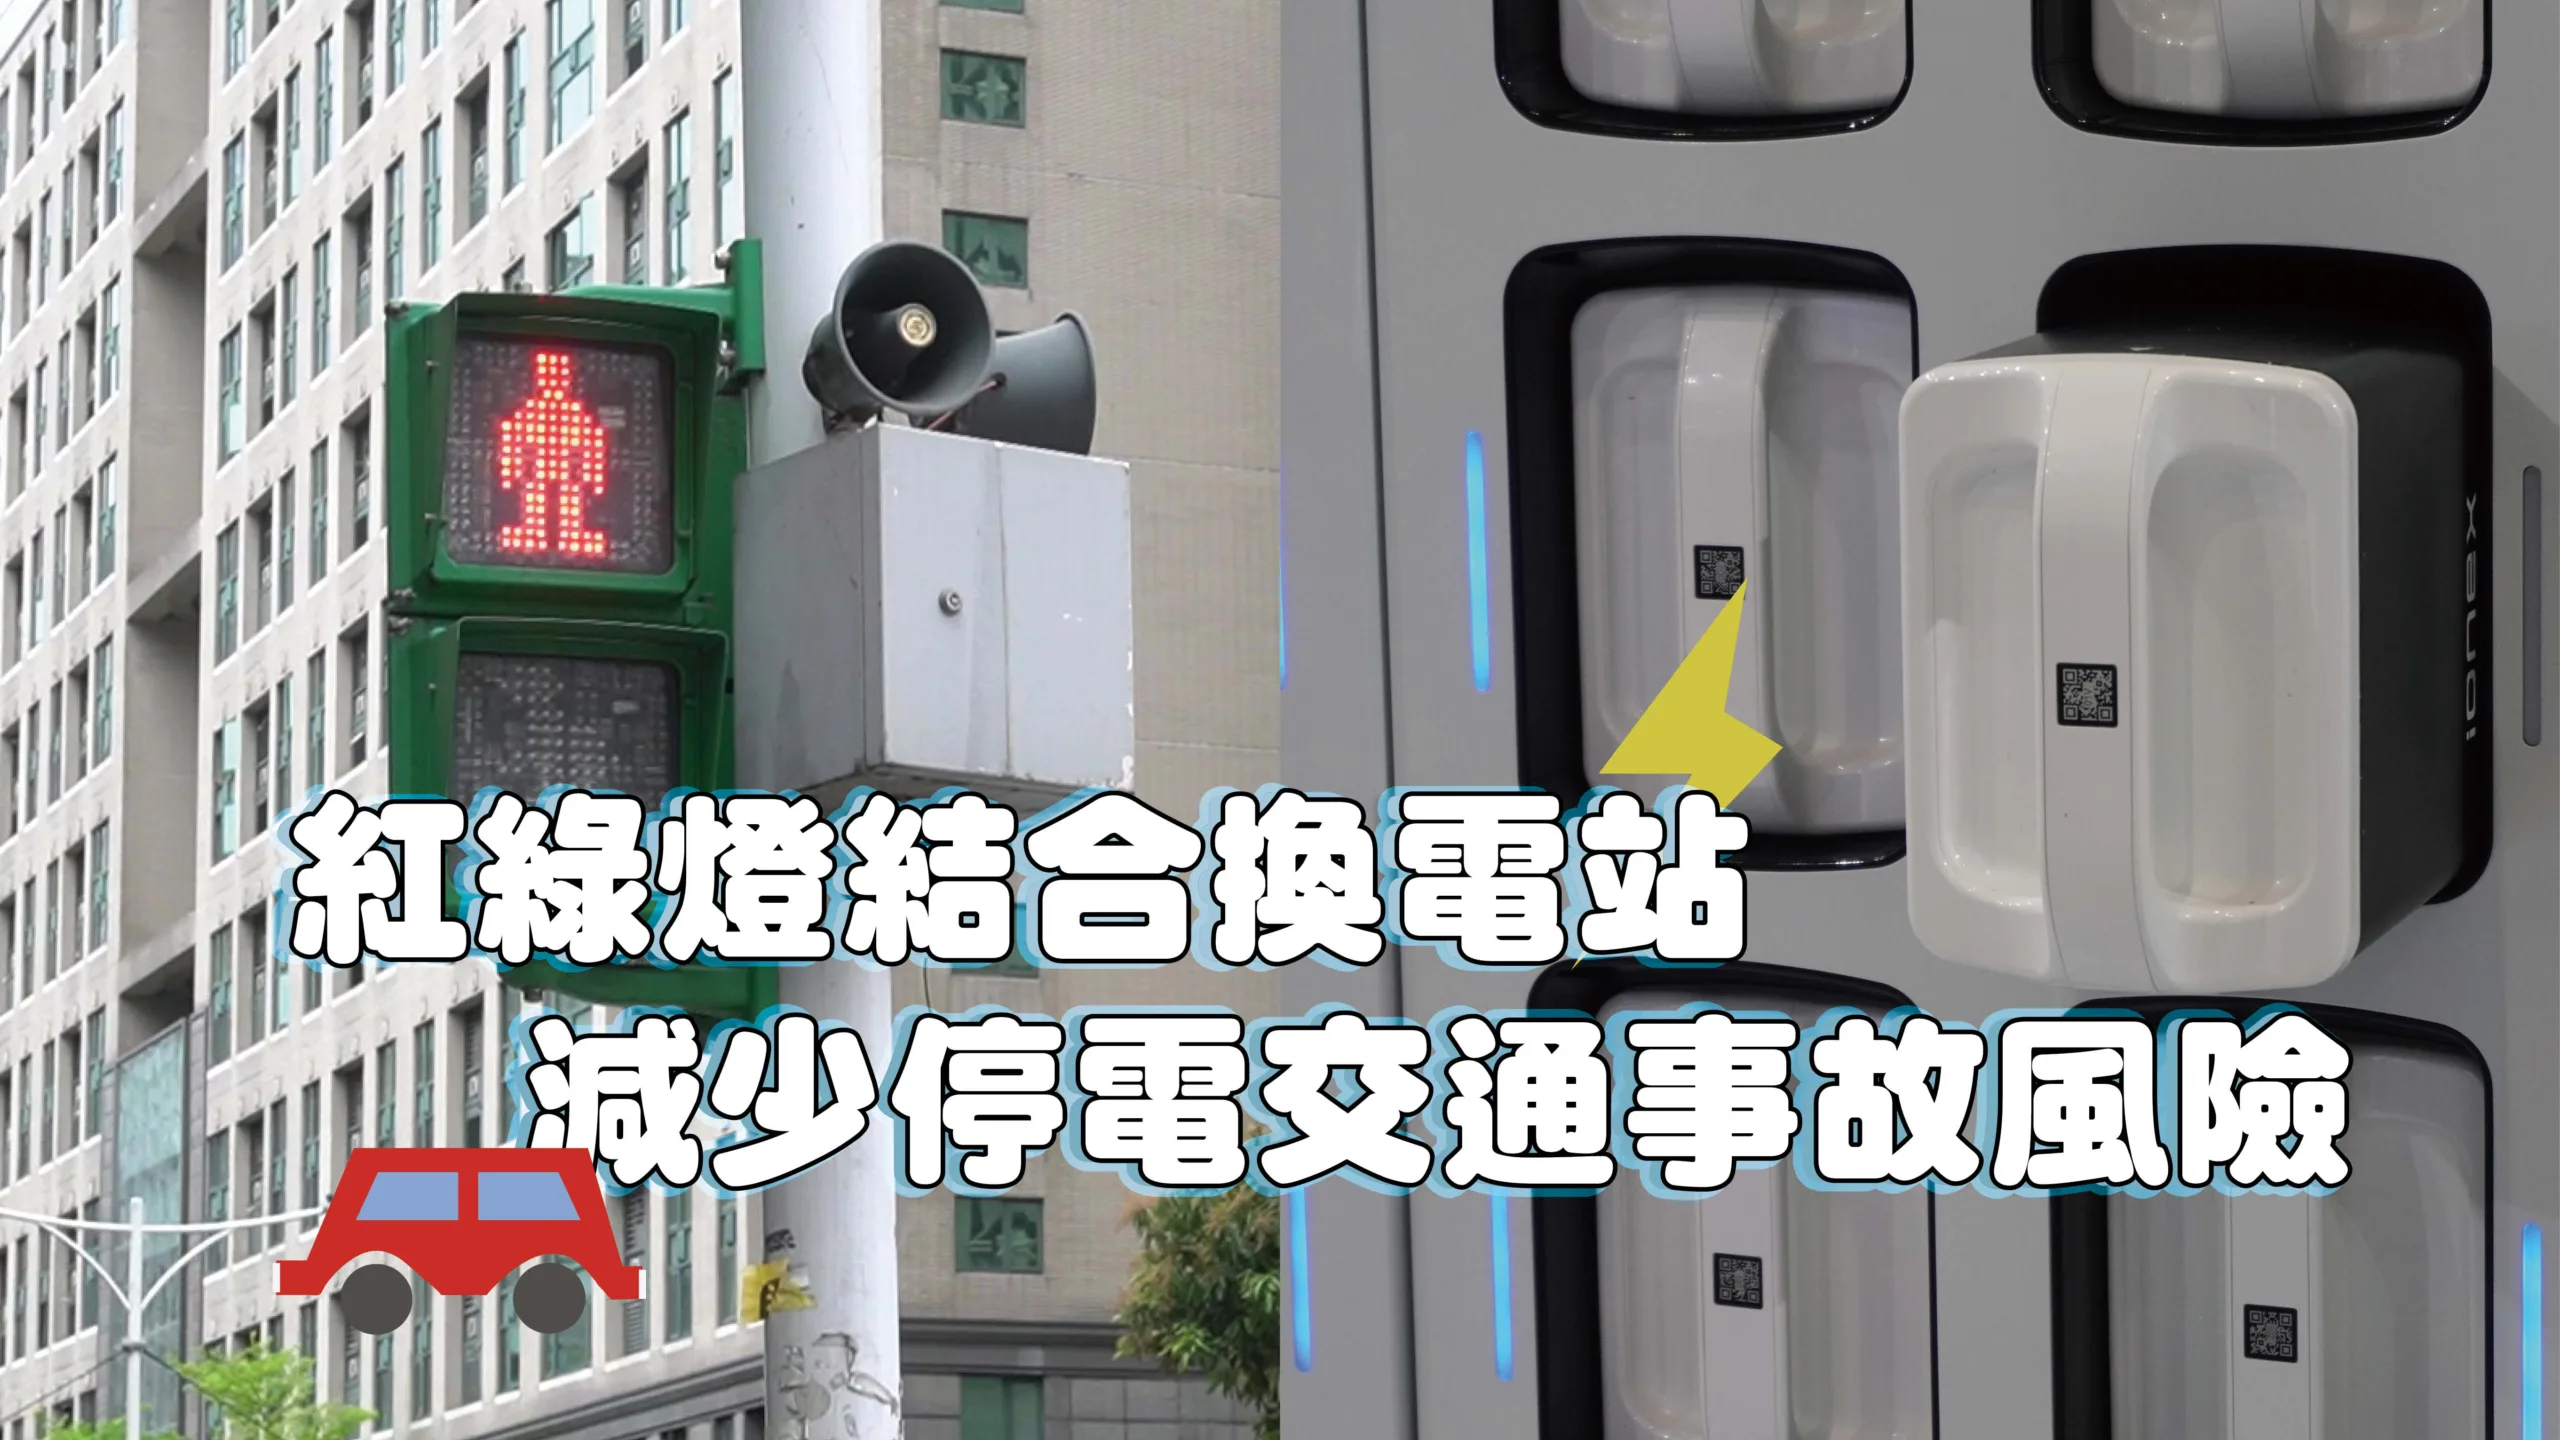 紅綠燈結合換電站 減少停電交通事故風險